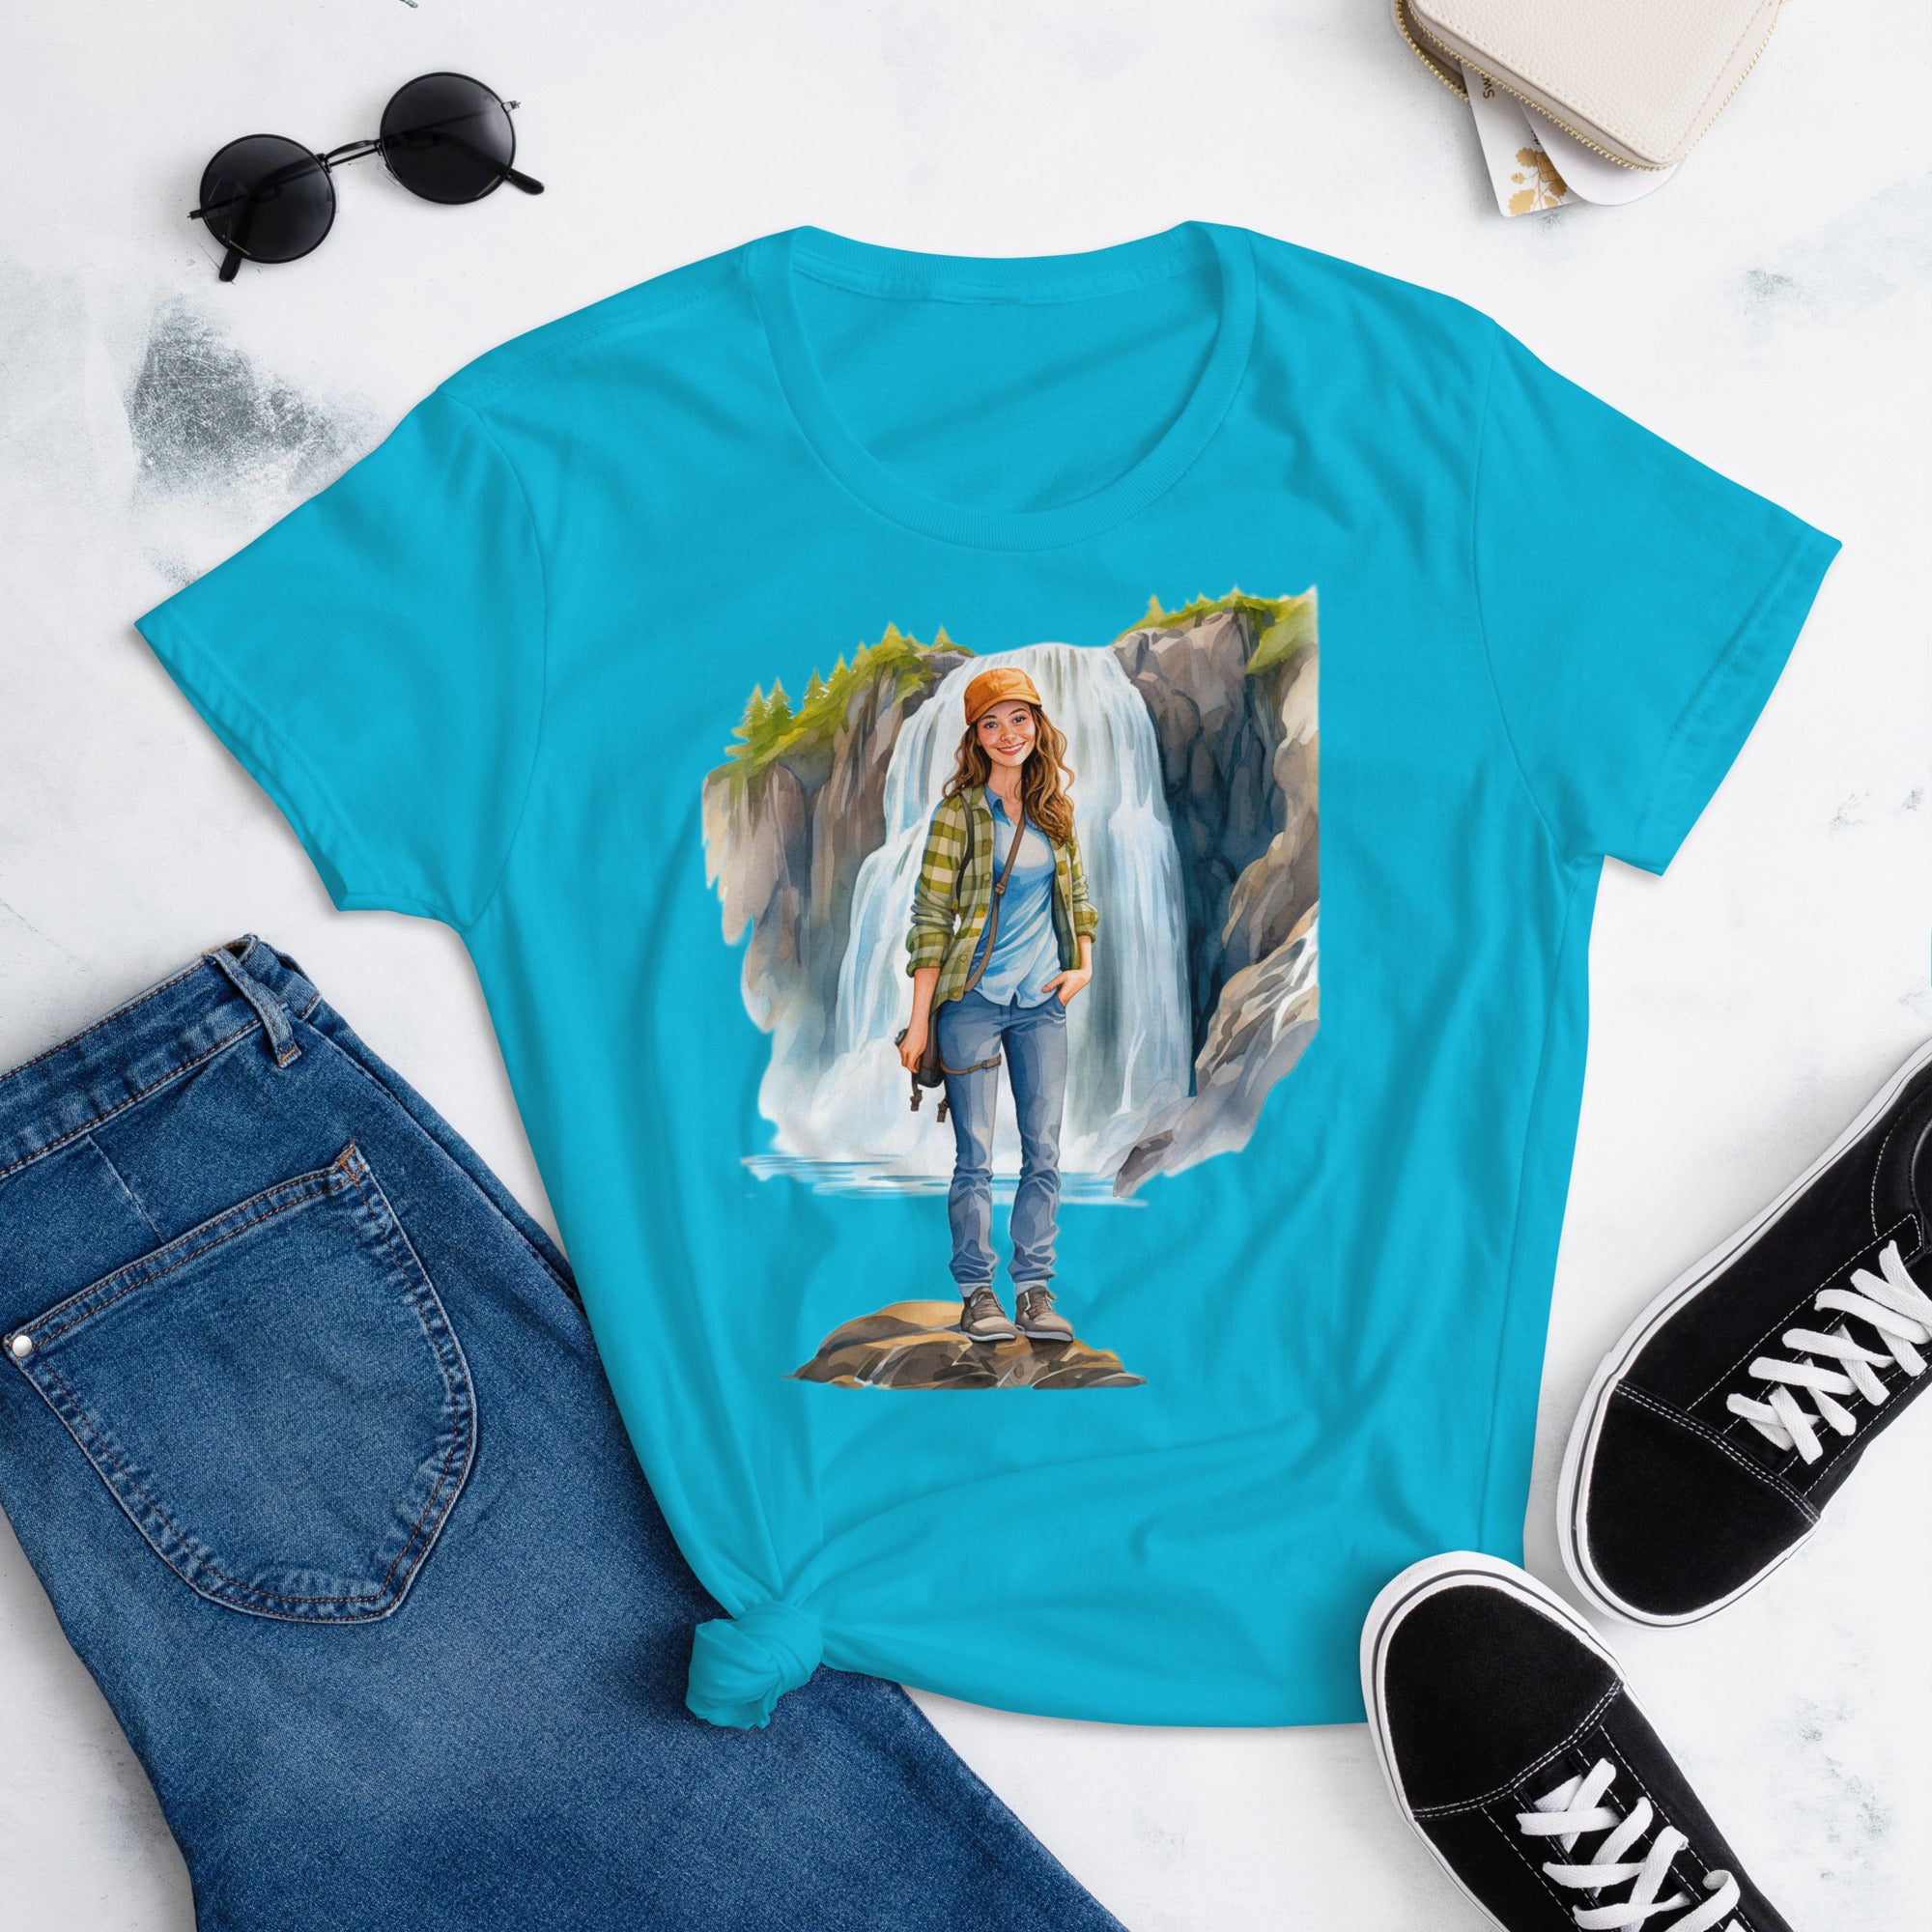 Waterfall Hike Women's T-Shirt